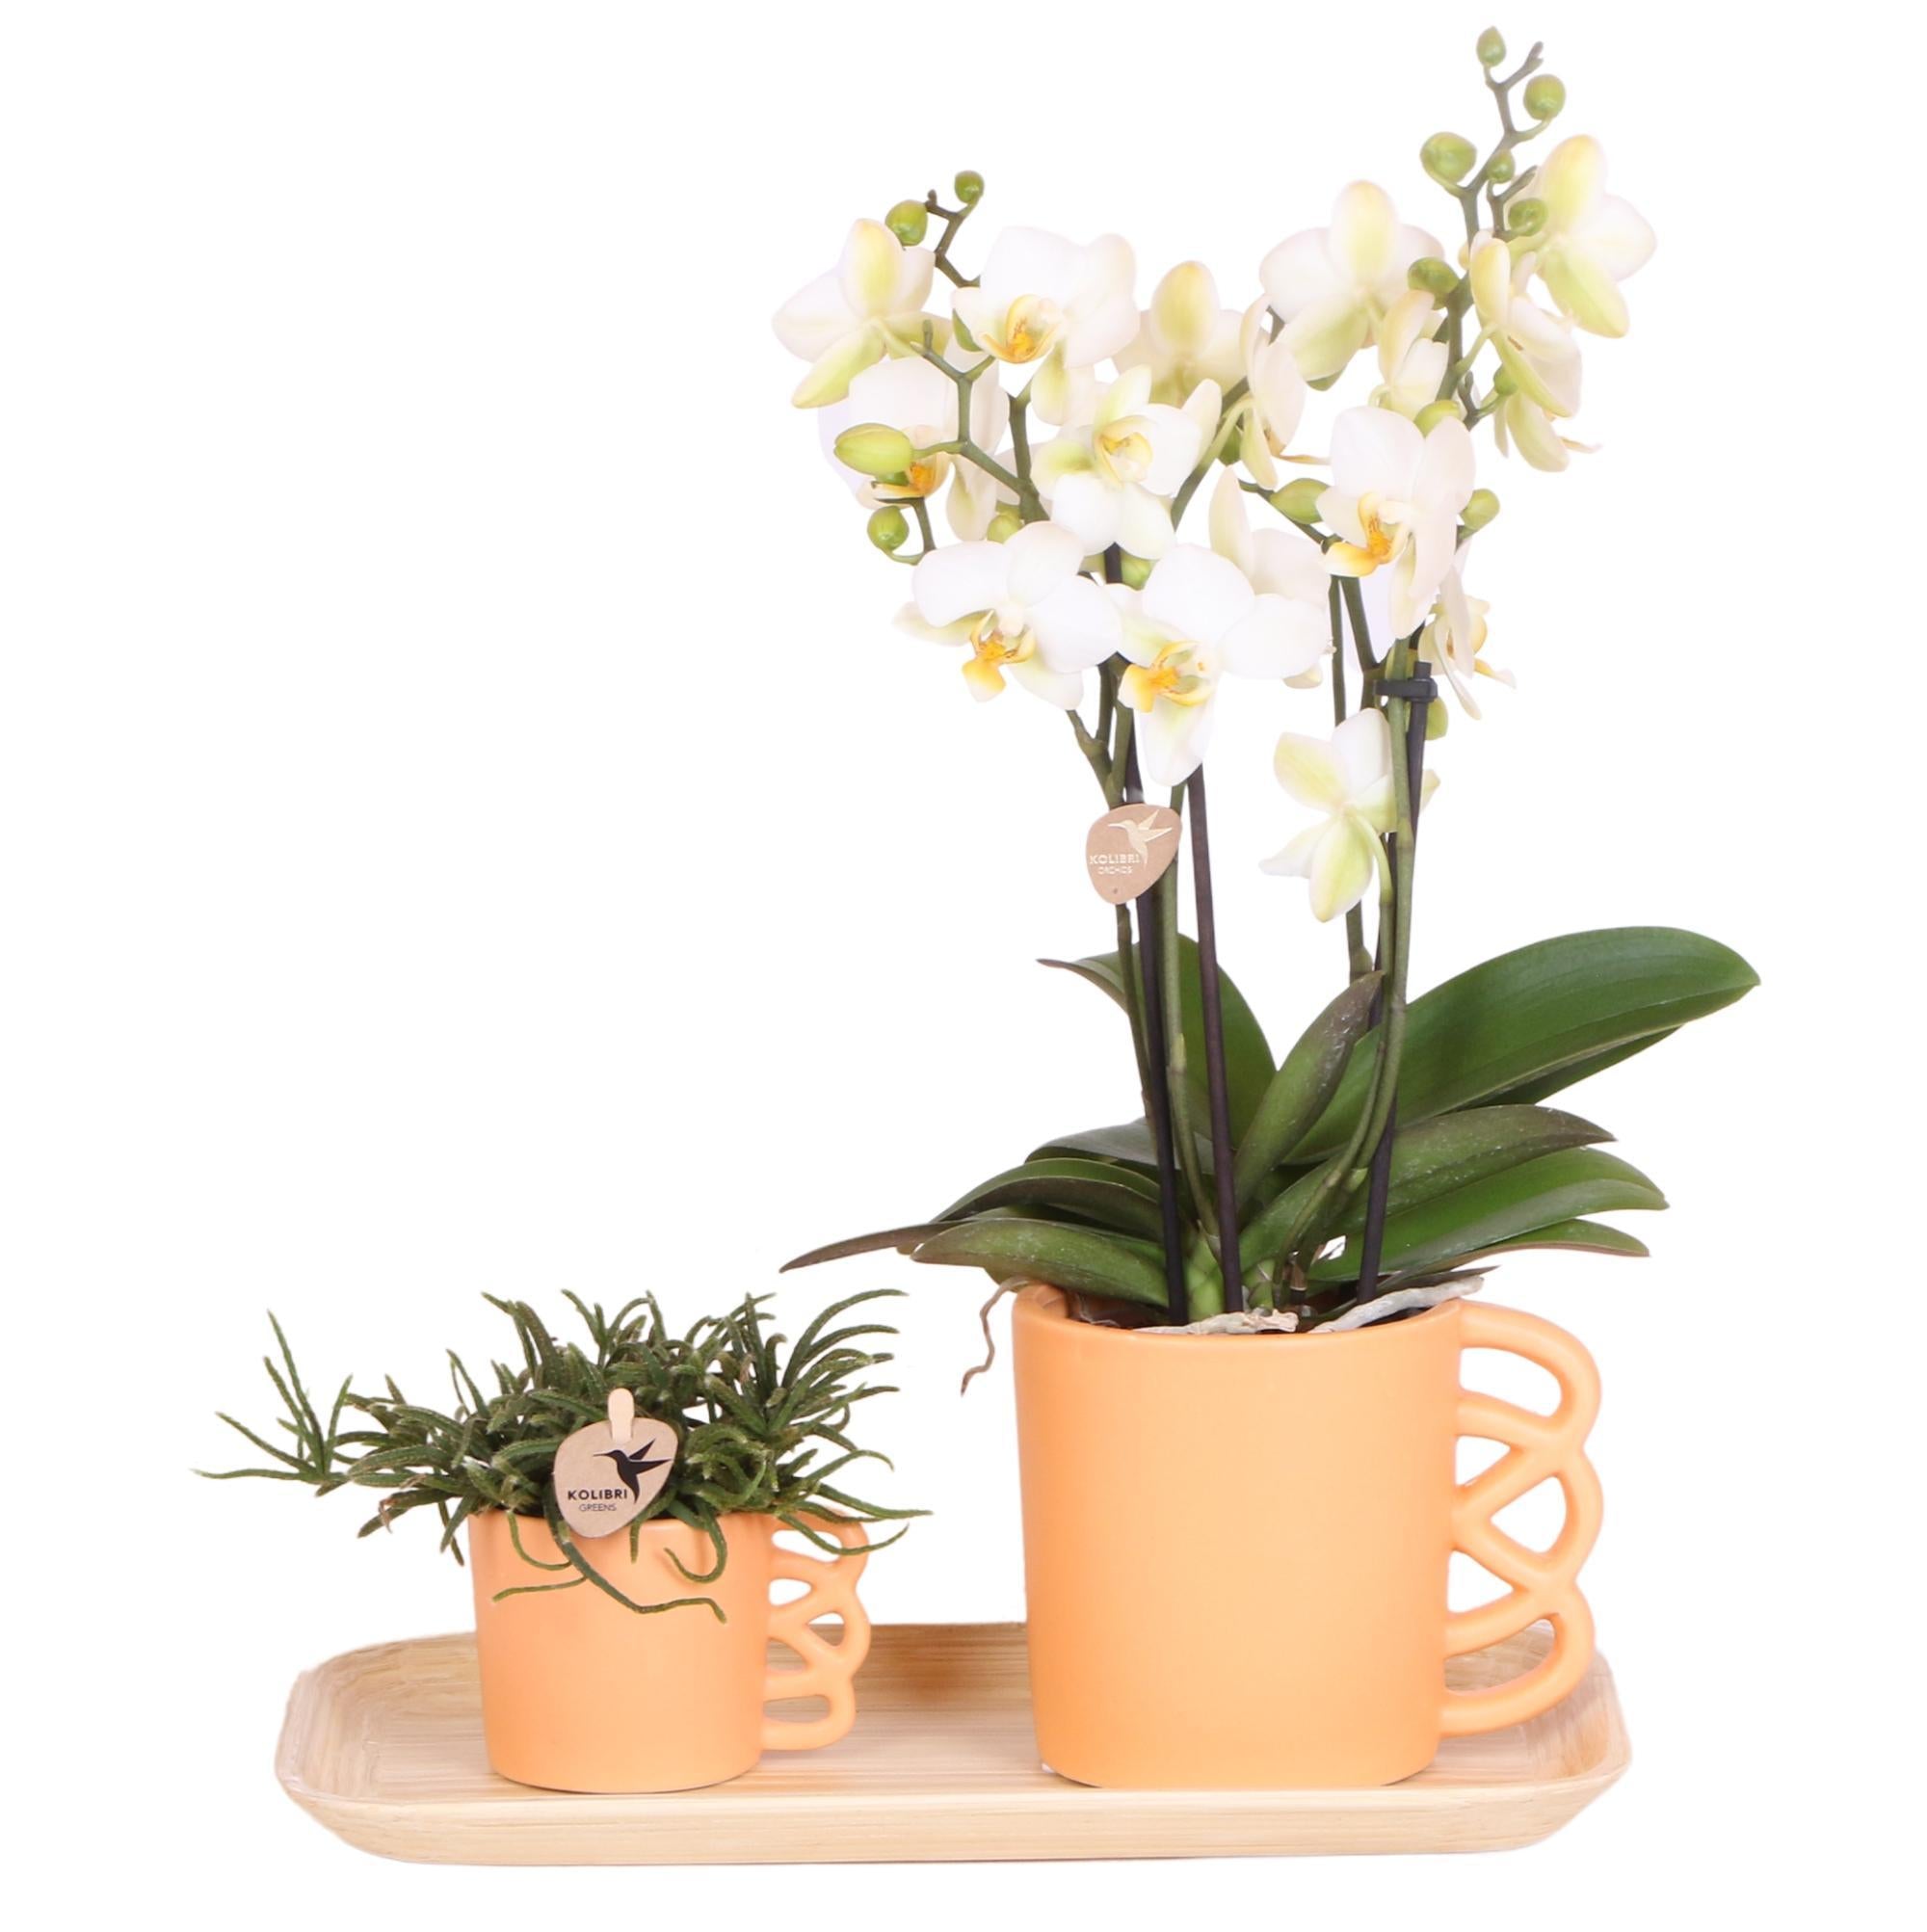 Everspring Plantenset peach small| groene planten met witte phalaenopsis orchidee in optimism peach sierpotten en bamboe dienblad - vers van de kweker, luchtzuiverend, sierplantenshop